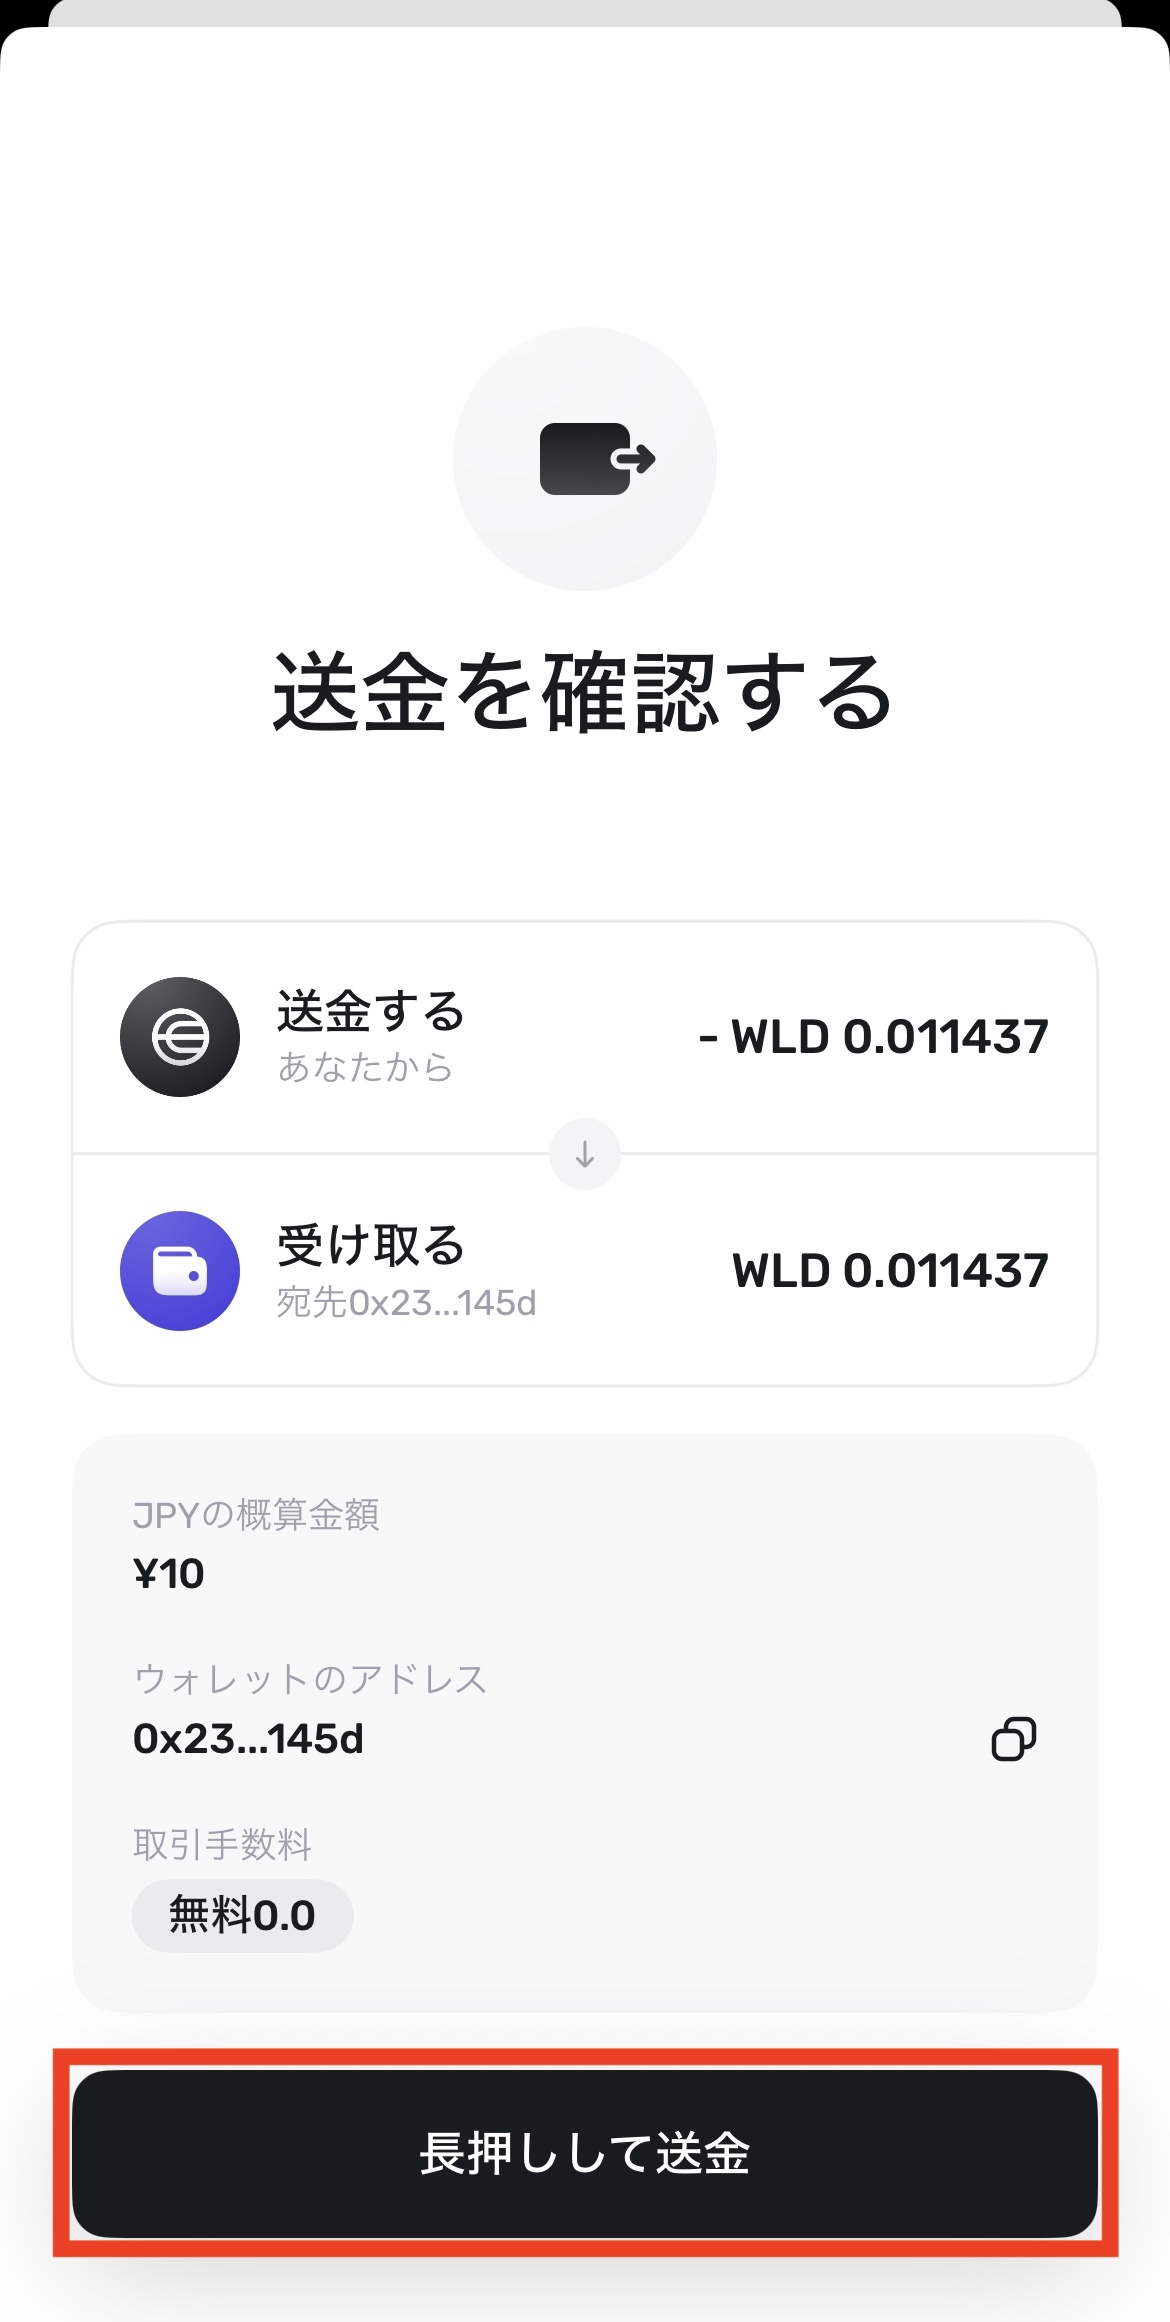 World AppからBybitへWLD（ワールドコイン）を送金